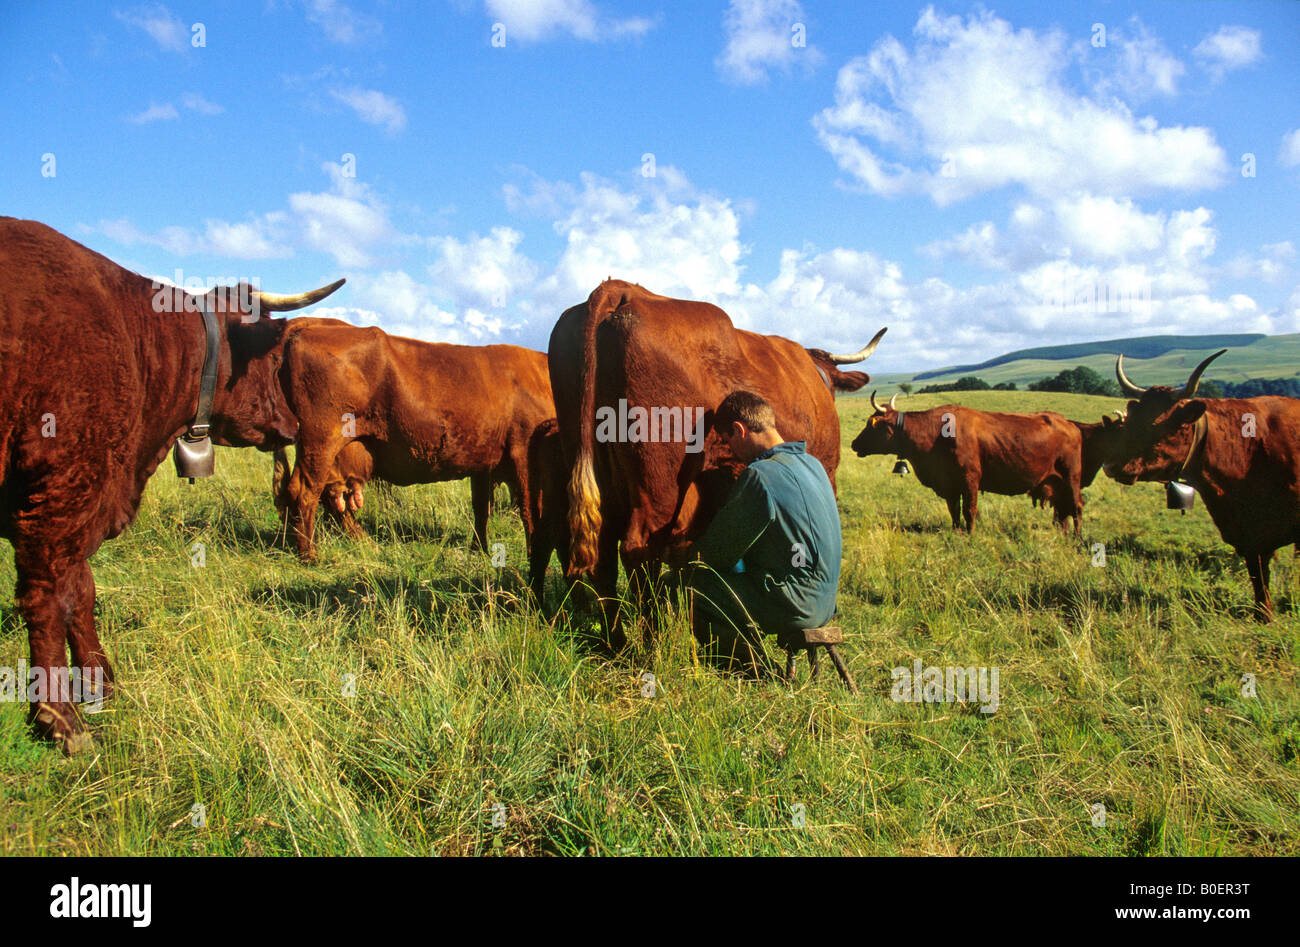 Fermier qui trait une vache Salers dans un champ, France Banque D'Images